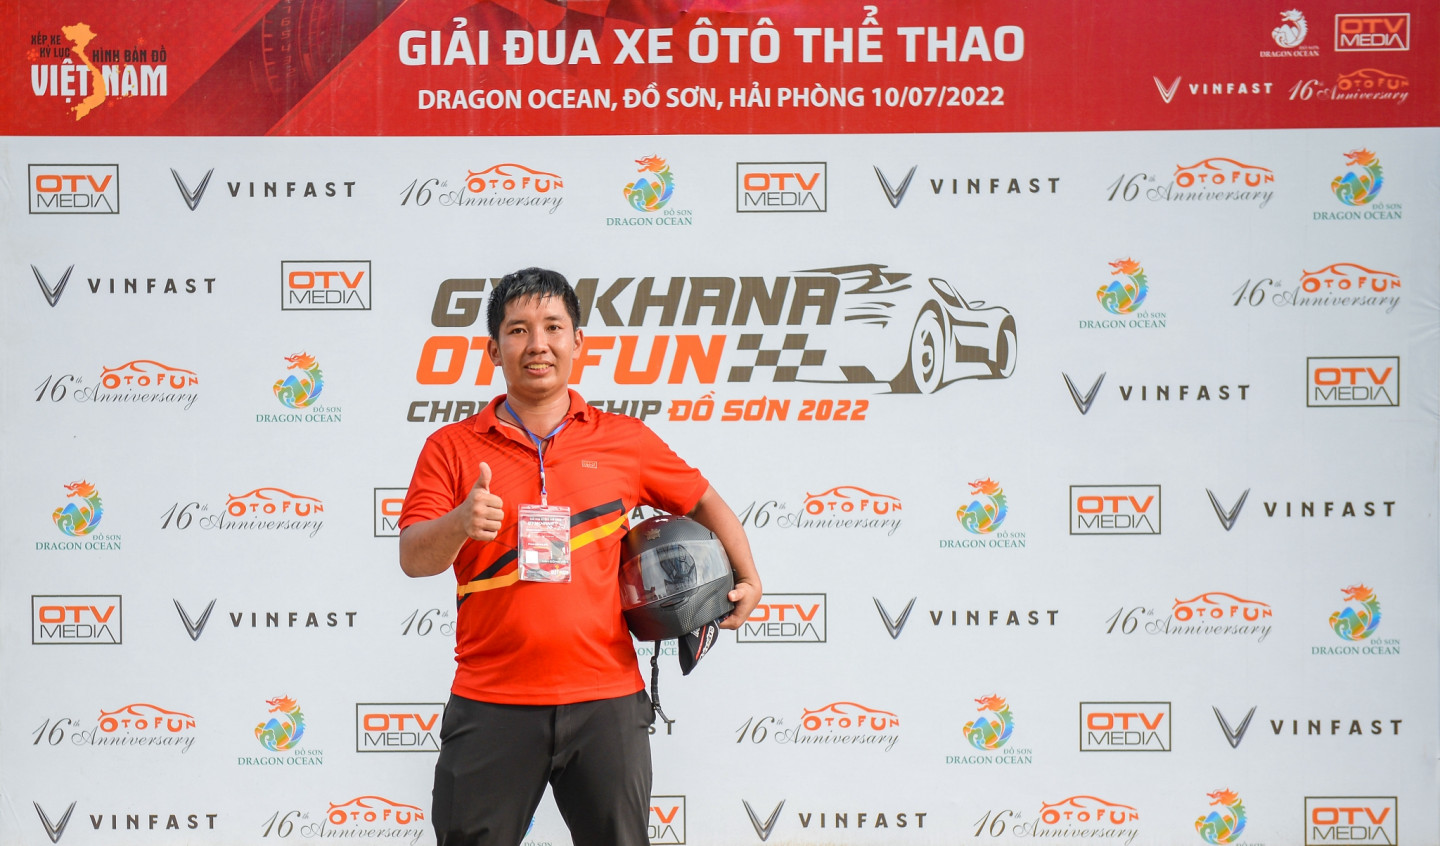 VĐV Nguyễn Văn Việt giành giải Nhì và VĐV Phạm Quốc Huy đã giành giải Ba.